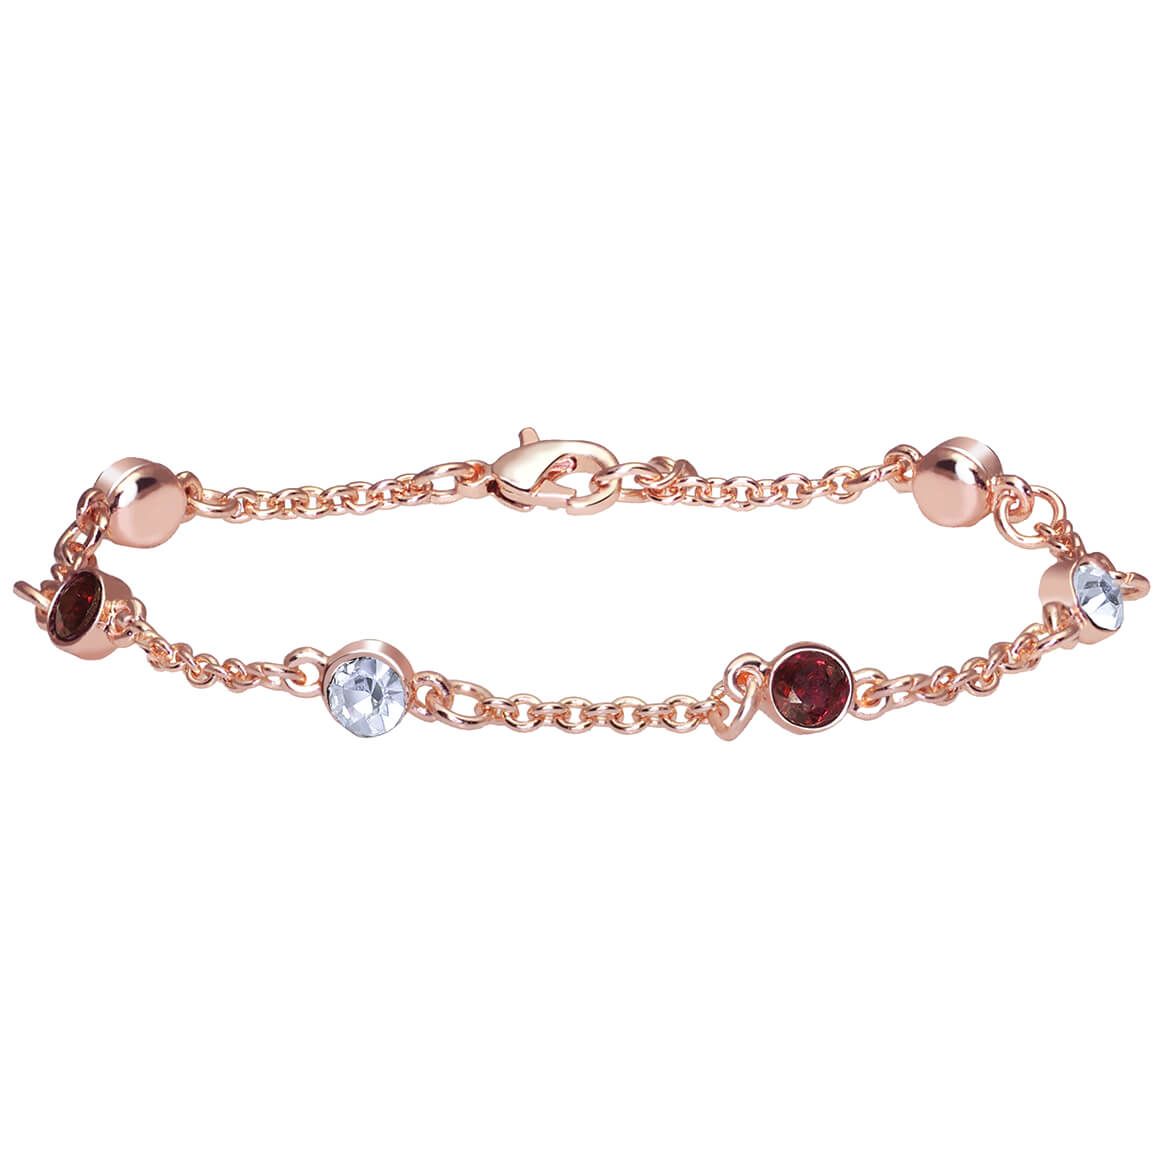 Designer Garnet Bracelet with Swarovski Crystals + '-' + 374144